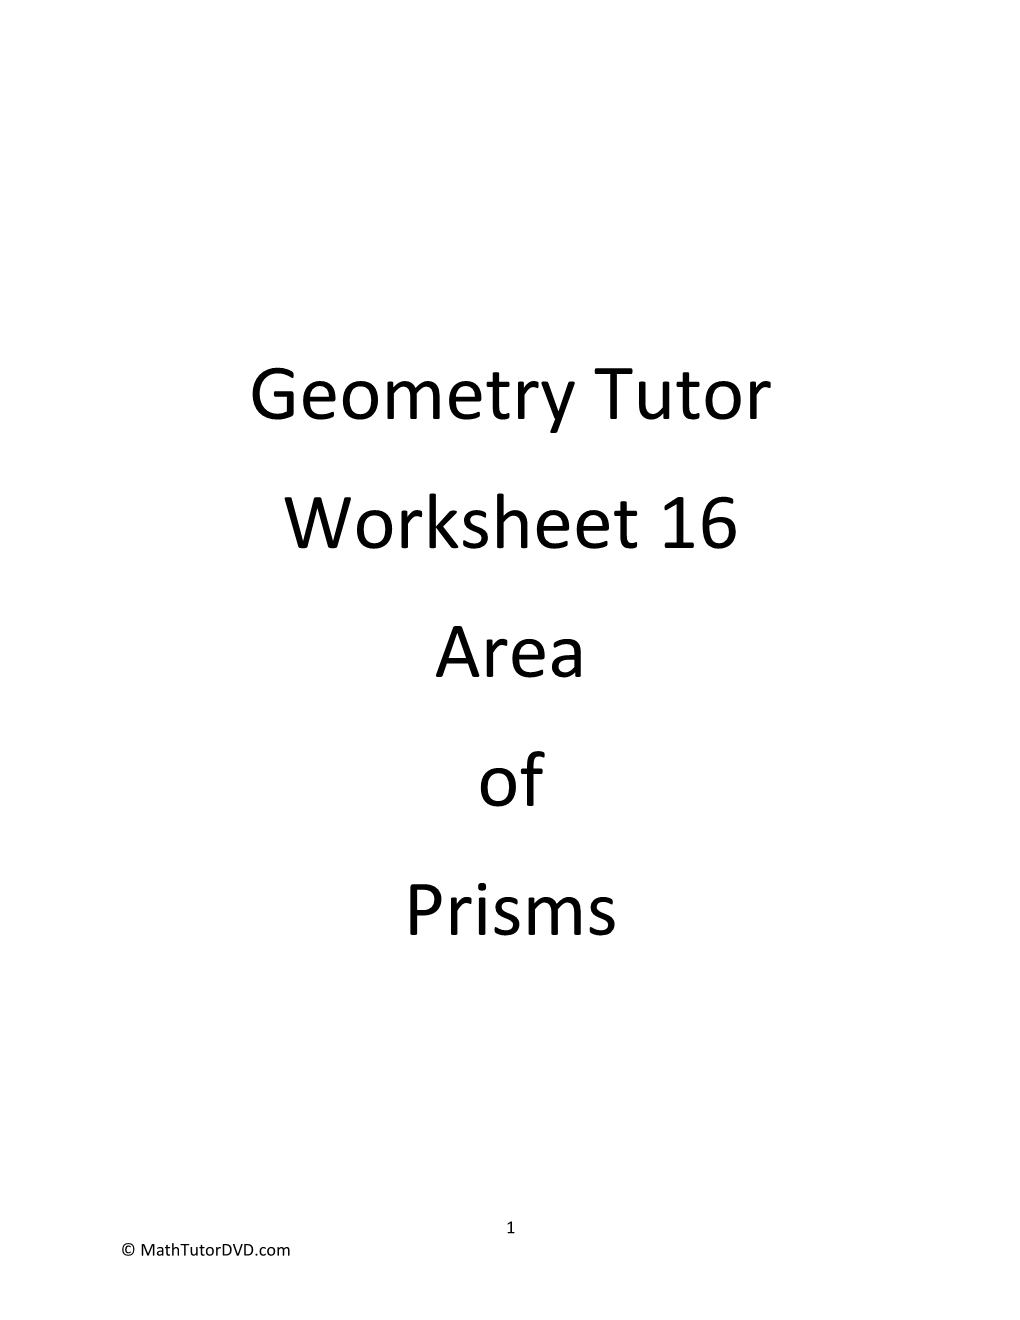 Geometry Tutor Worksheet 16 Area of Prisms